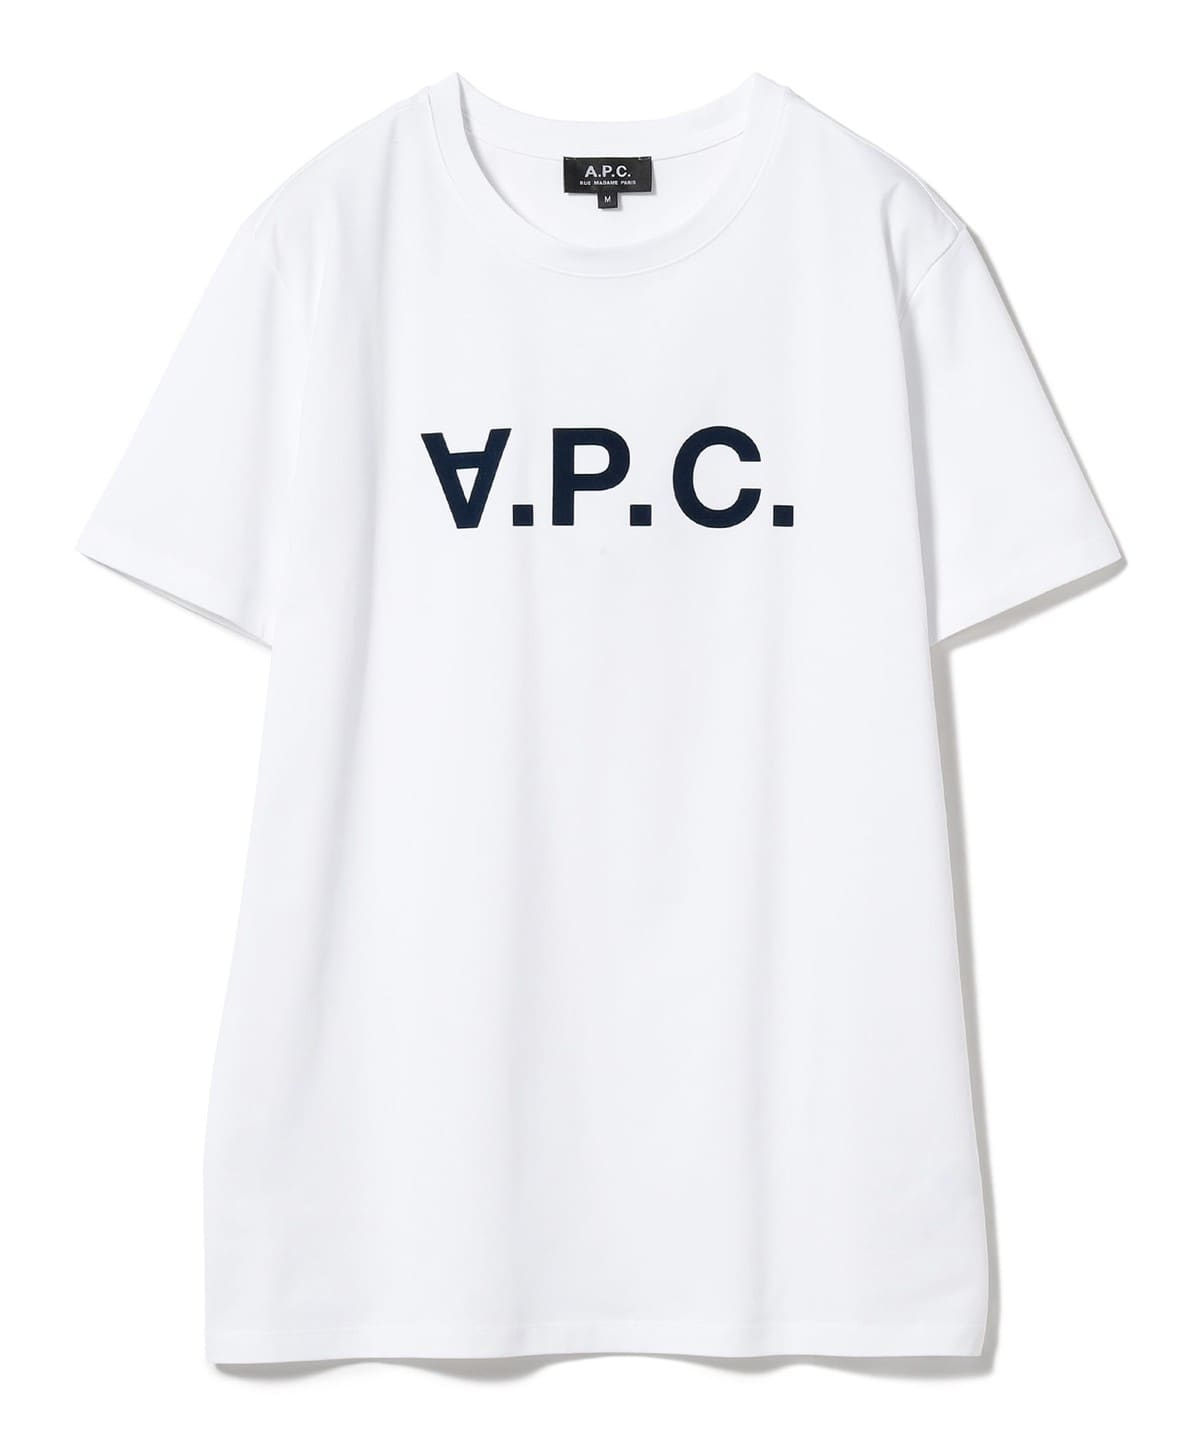 Demi-Luxe BEAMS（デミルクス ビームス）A.P.C. / VPC メンズ Tシャツ（Tシャツ・カットソー Tシャツ）通販｜BEAMS